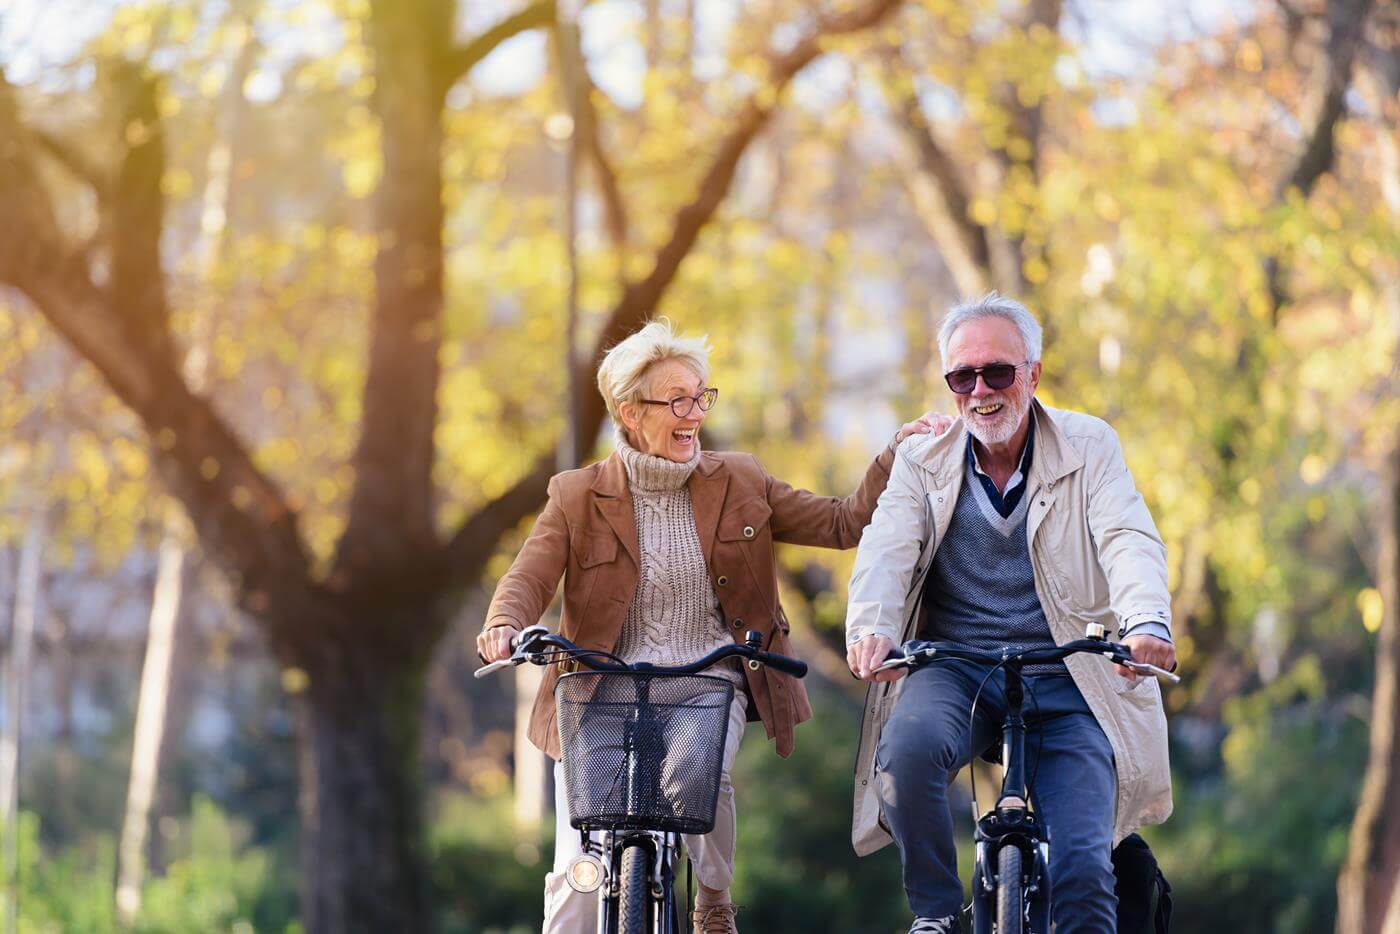 Fröhliches aktives Seniorenpaar mit Fahrrad im öffentlichen Park, das zusammen Spaß hat. Perfekte Aktivitäten für ältere Menschen. Glückliches reifes Paar fahren Fahrräder im Park